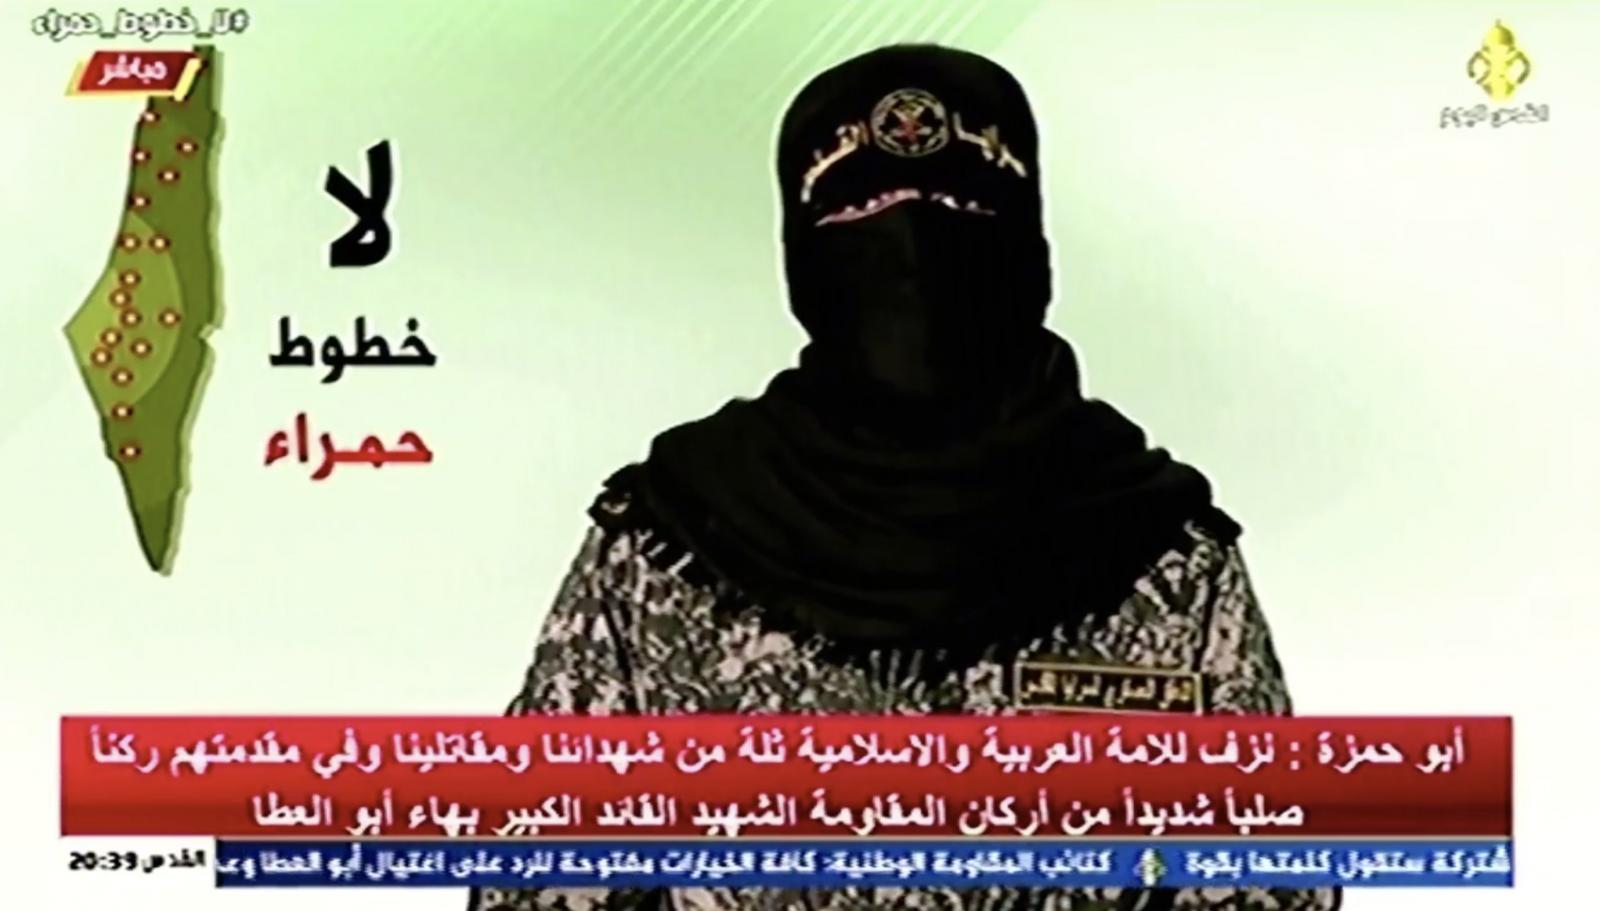 הדובר רעול הפנים של הג'יהאד האיסלמי, מבטיח להמשיך בלחימה (צילום מסך)